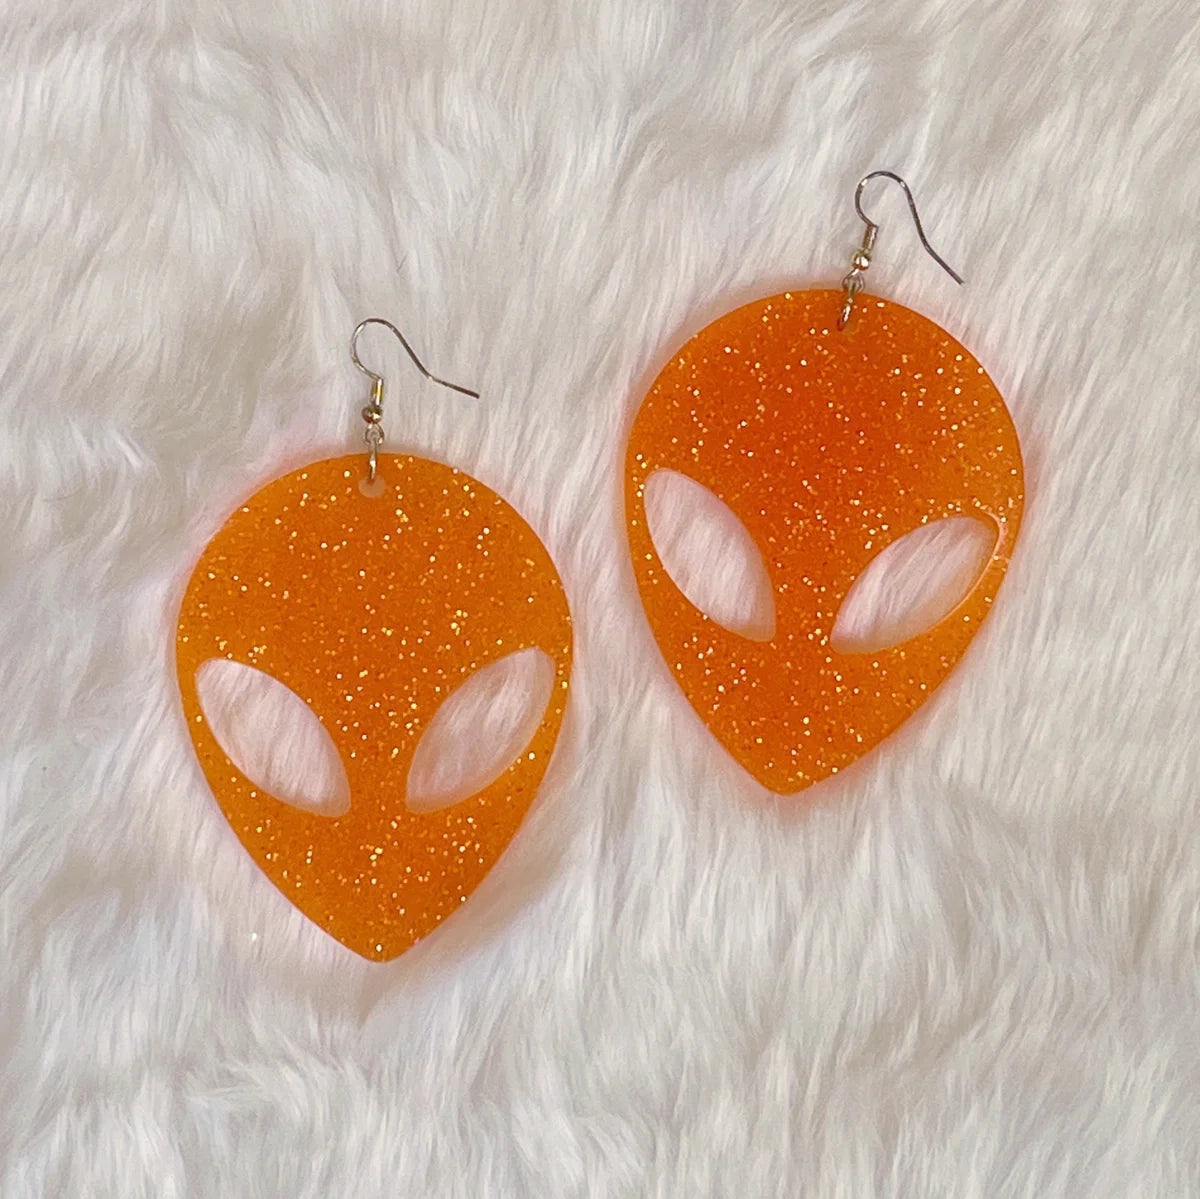 Large Glitter Alien Earrings